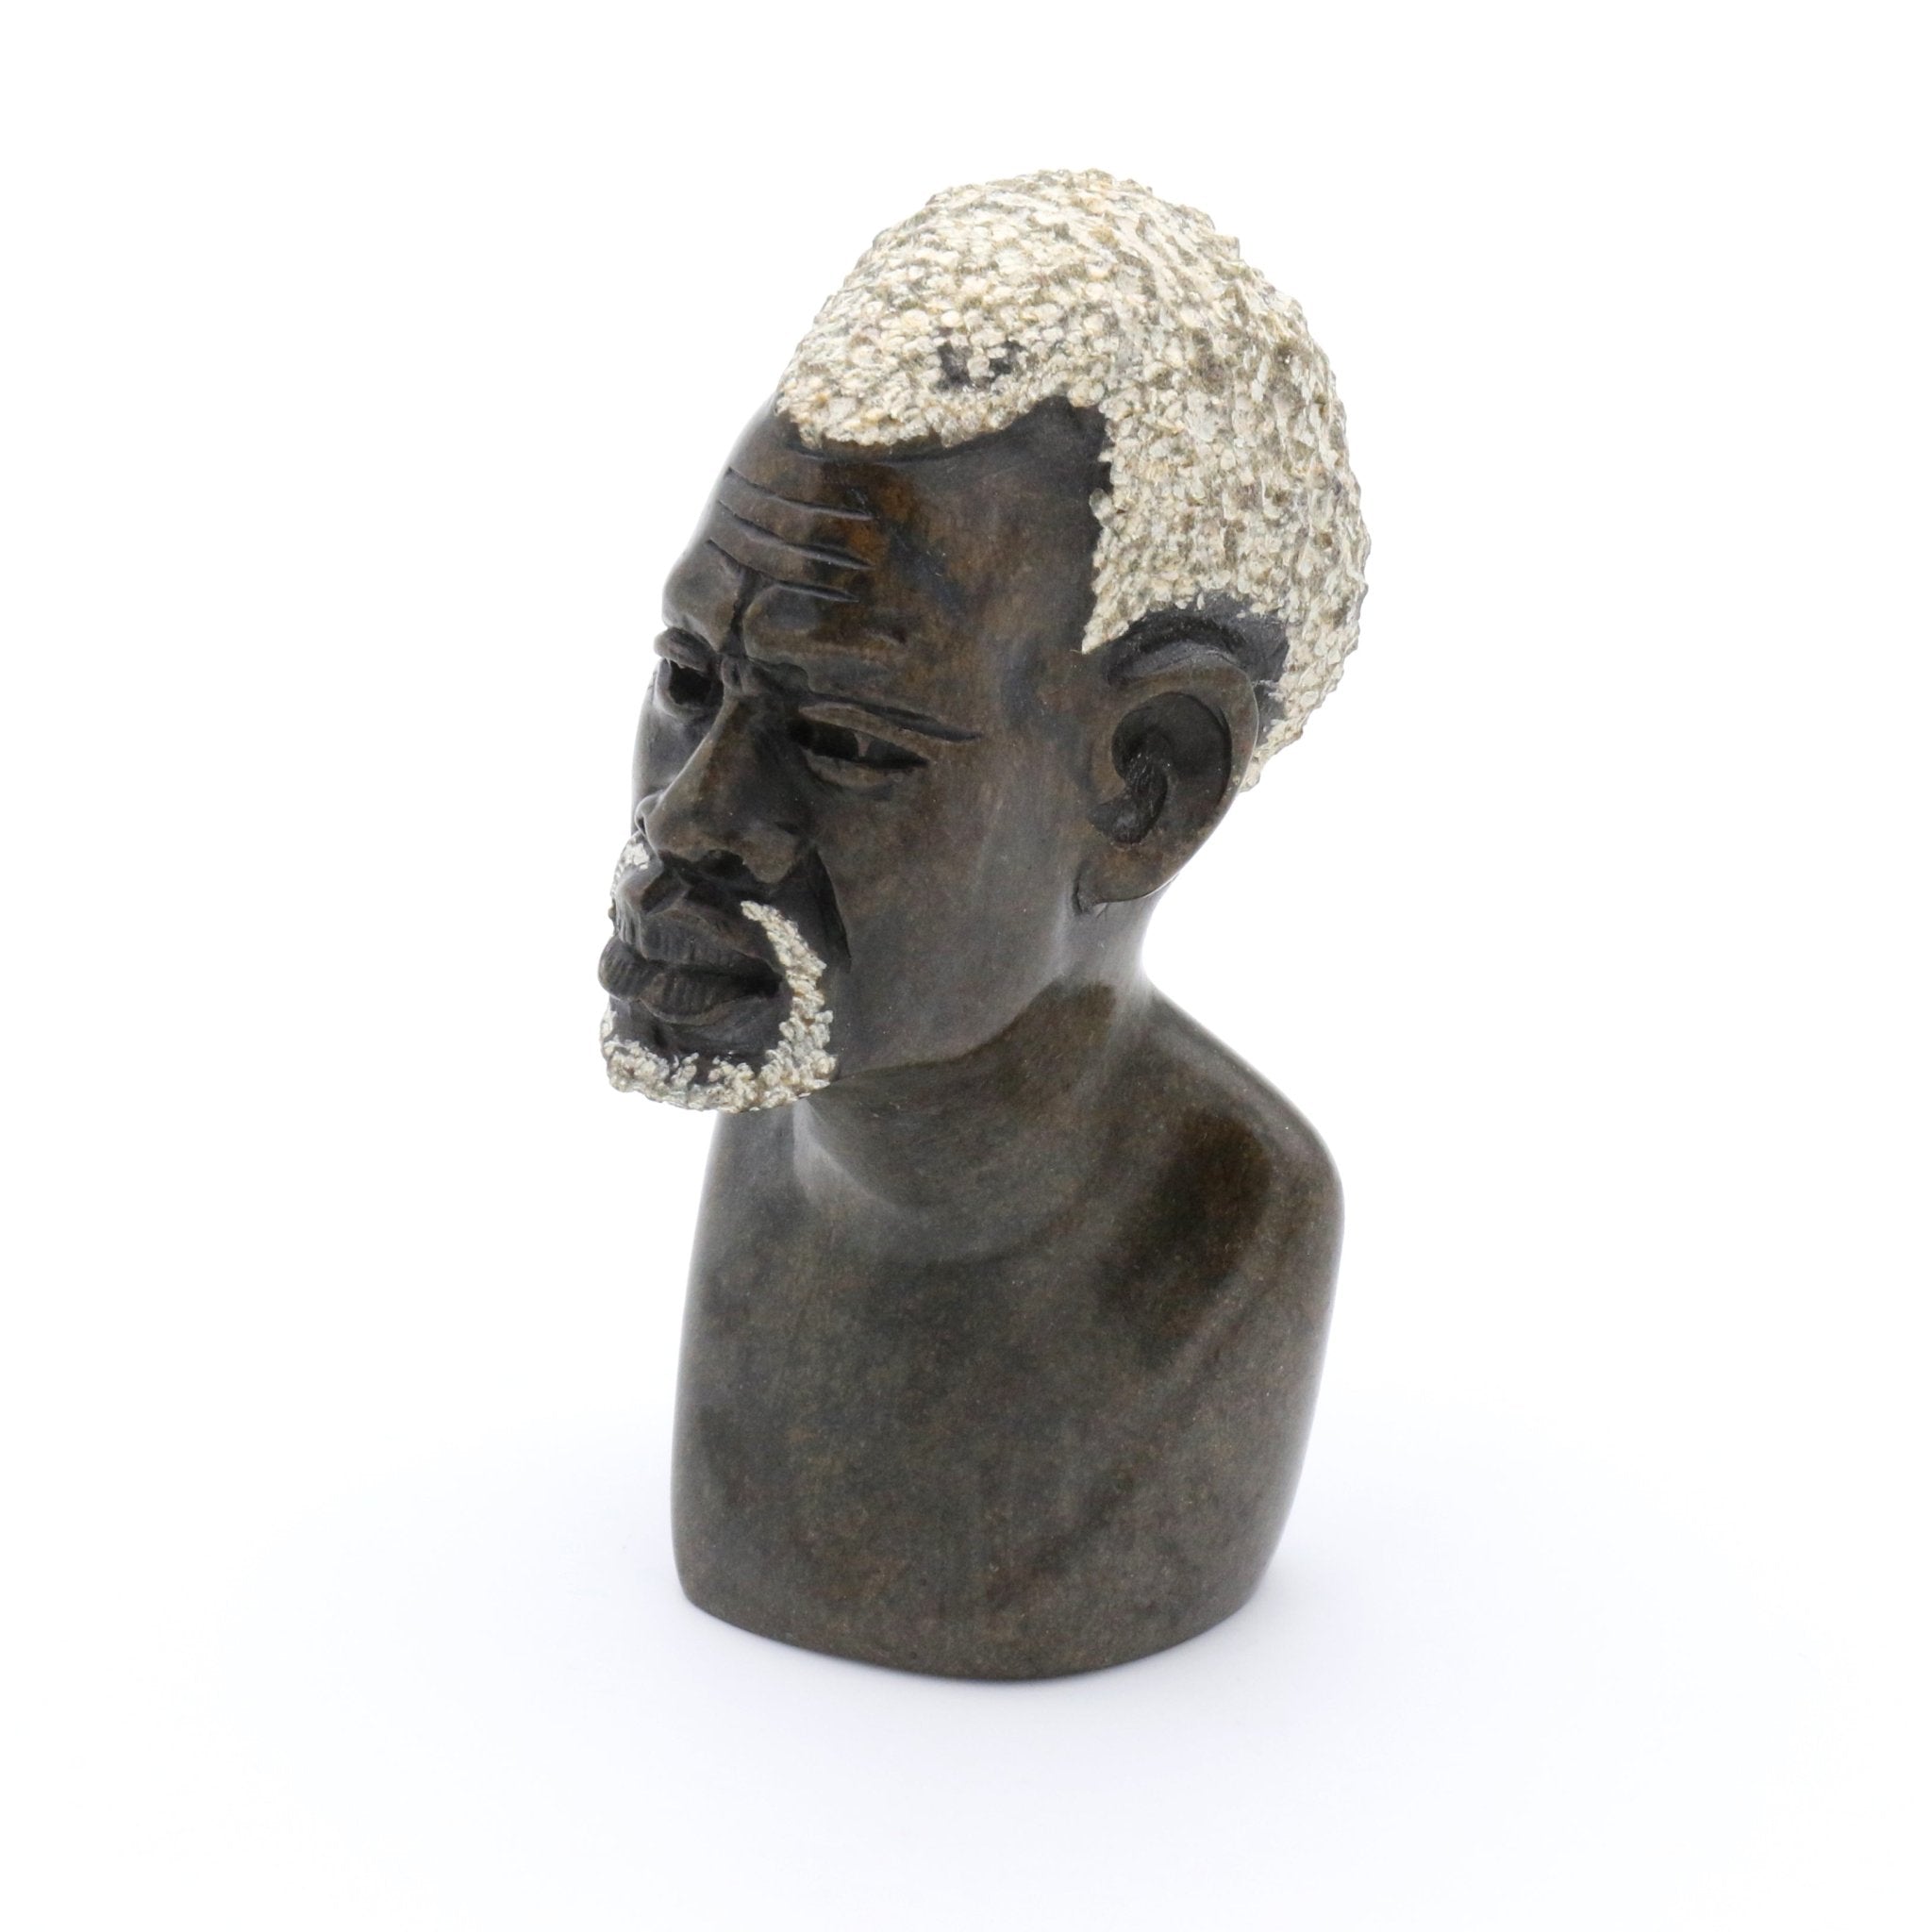 Obert Fidze - Portrait eines afrikanischen Mannes - Shona-Art Shop - Kunst Skulptur aus Stein, dekorativ für den Aussenbereich und Interior